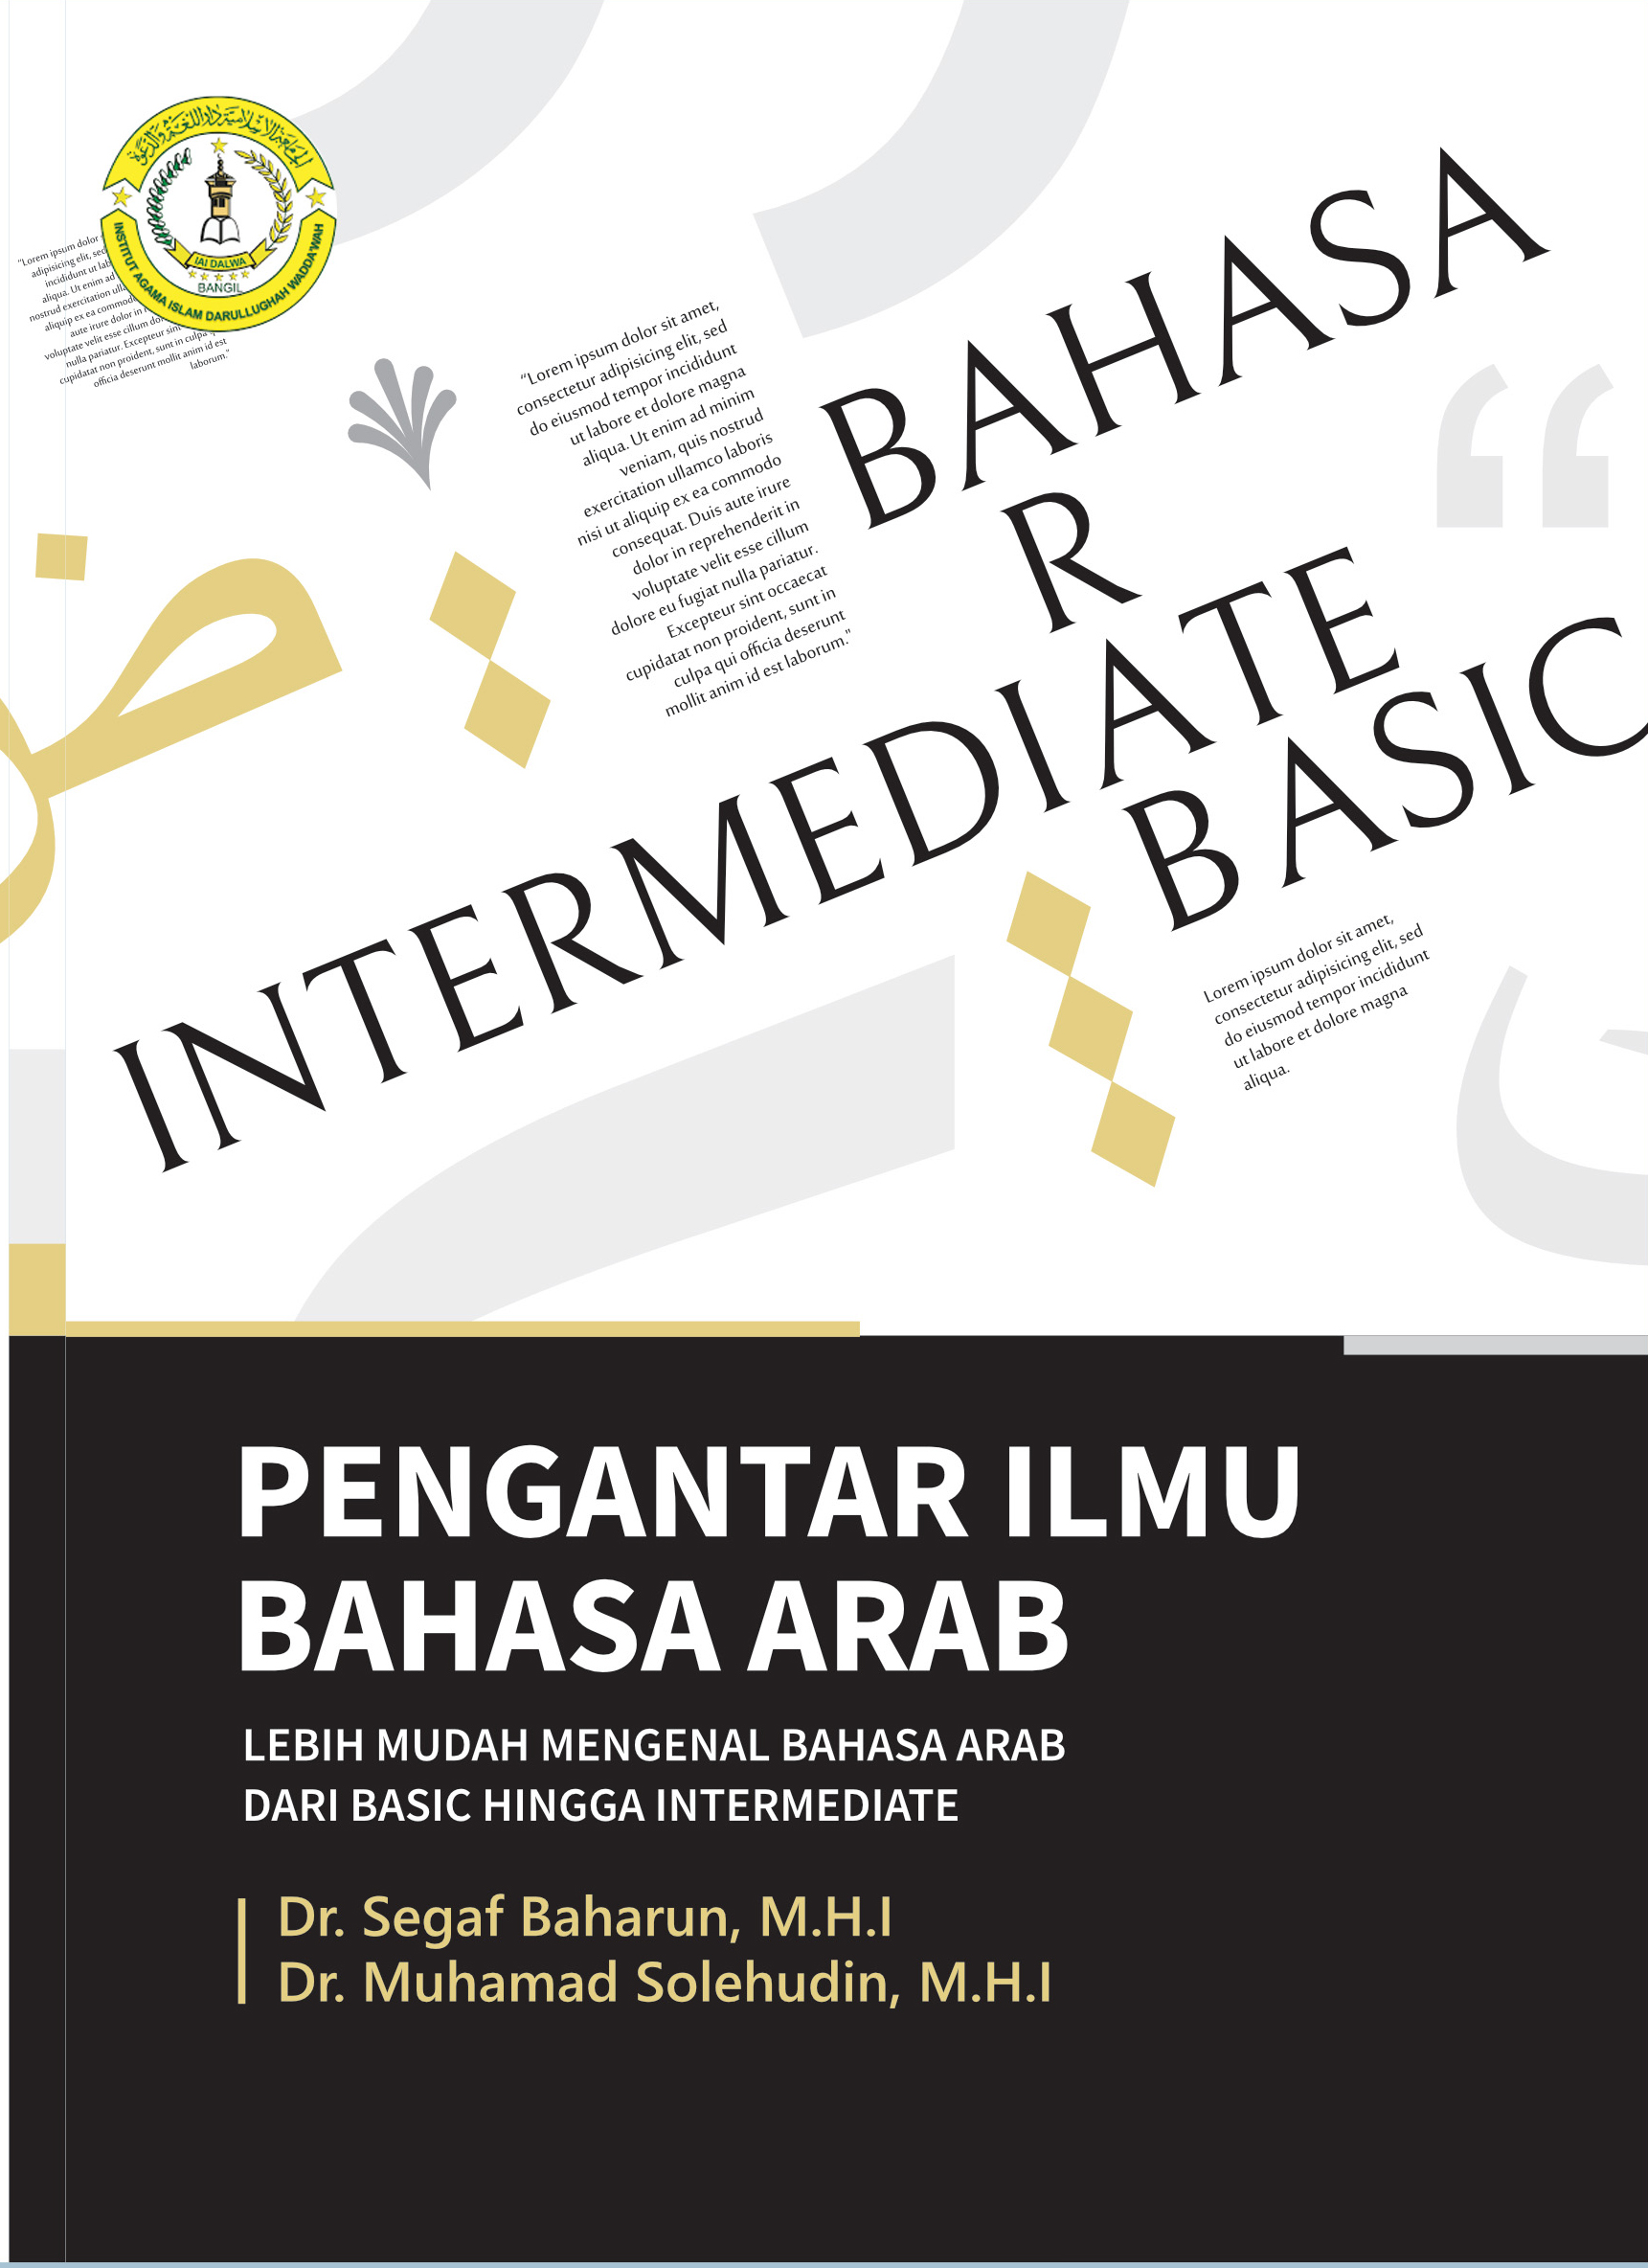 Pengantar Bahasa Arab dari Basic Hingga Intermediate 1